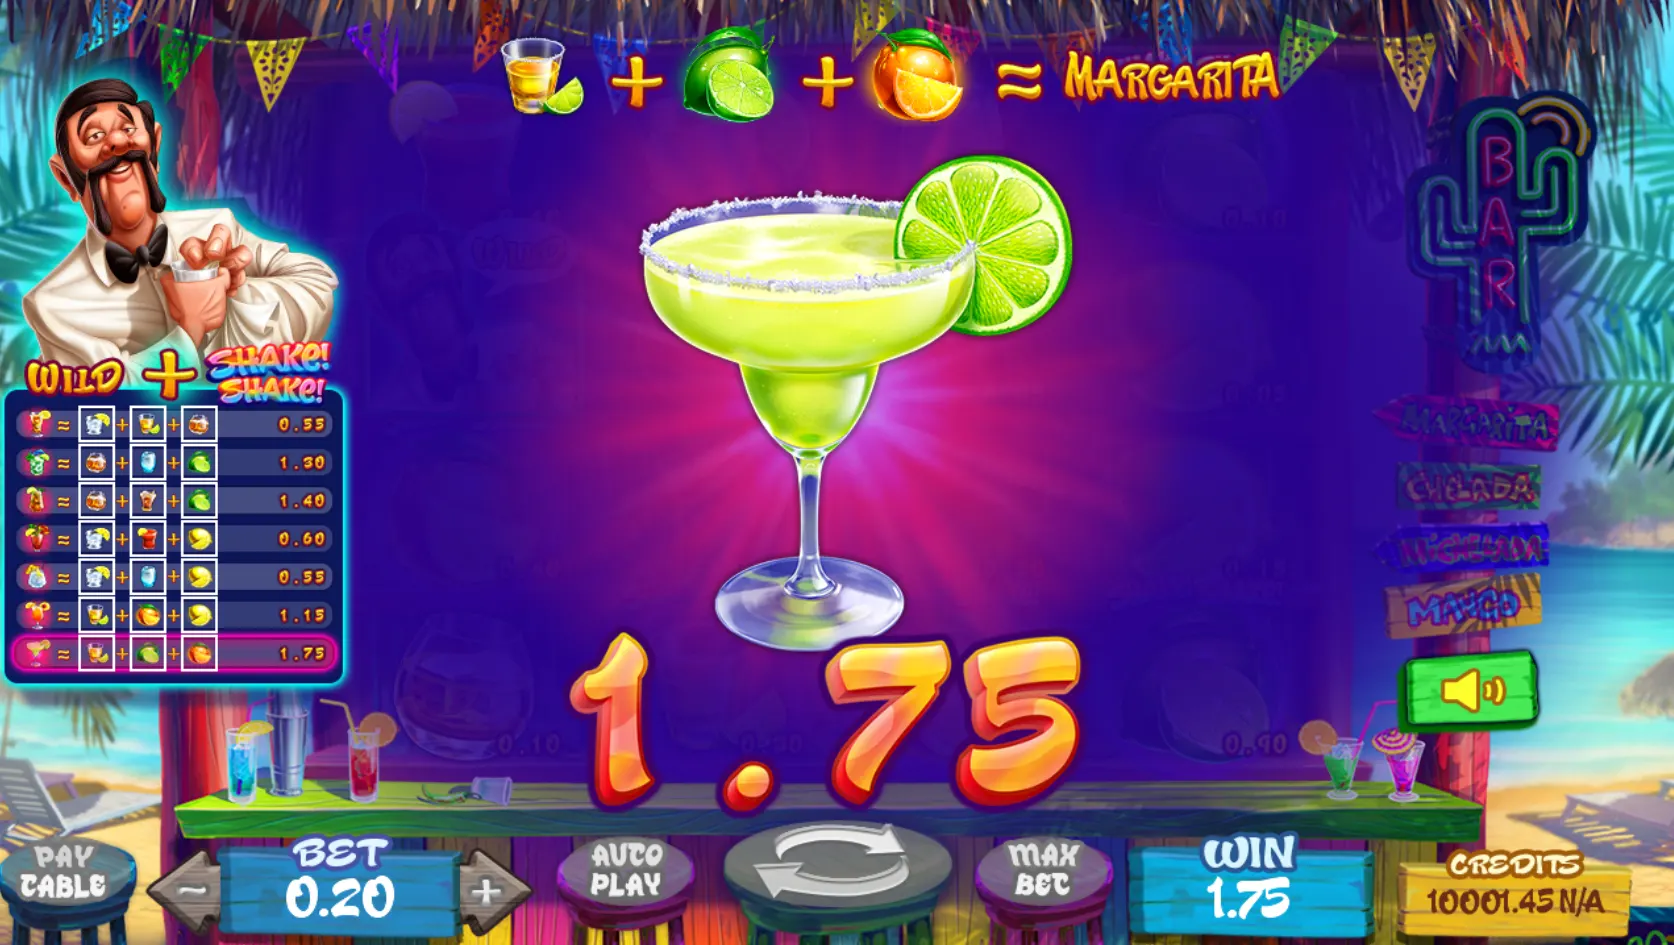 Shake! Shake! Margarita cocktail